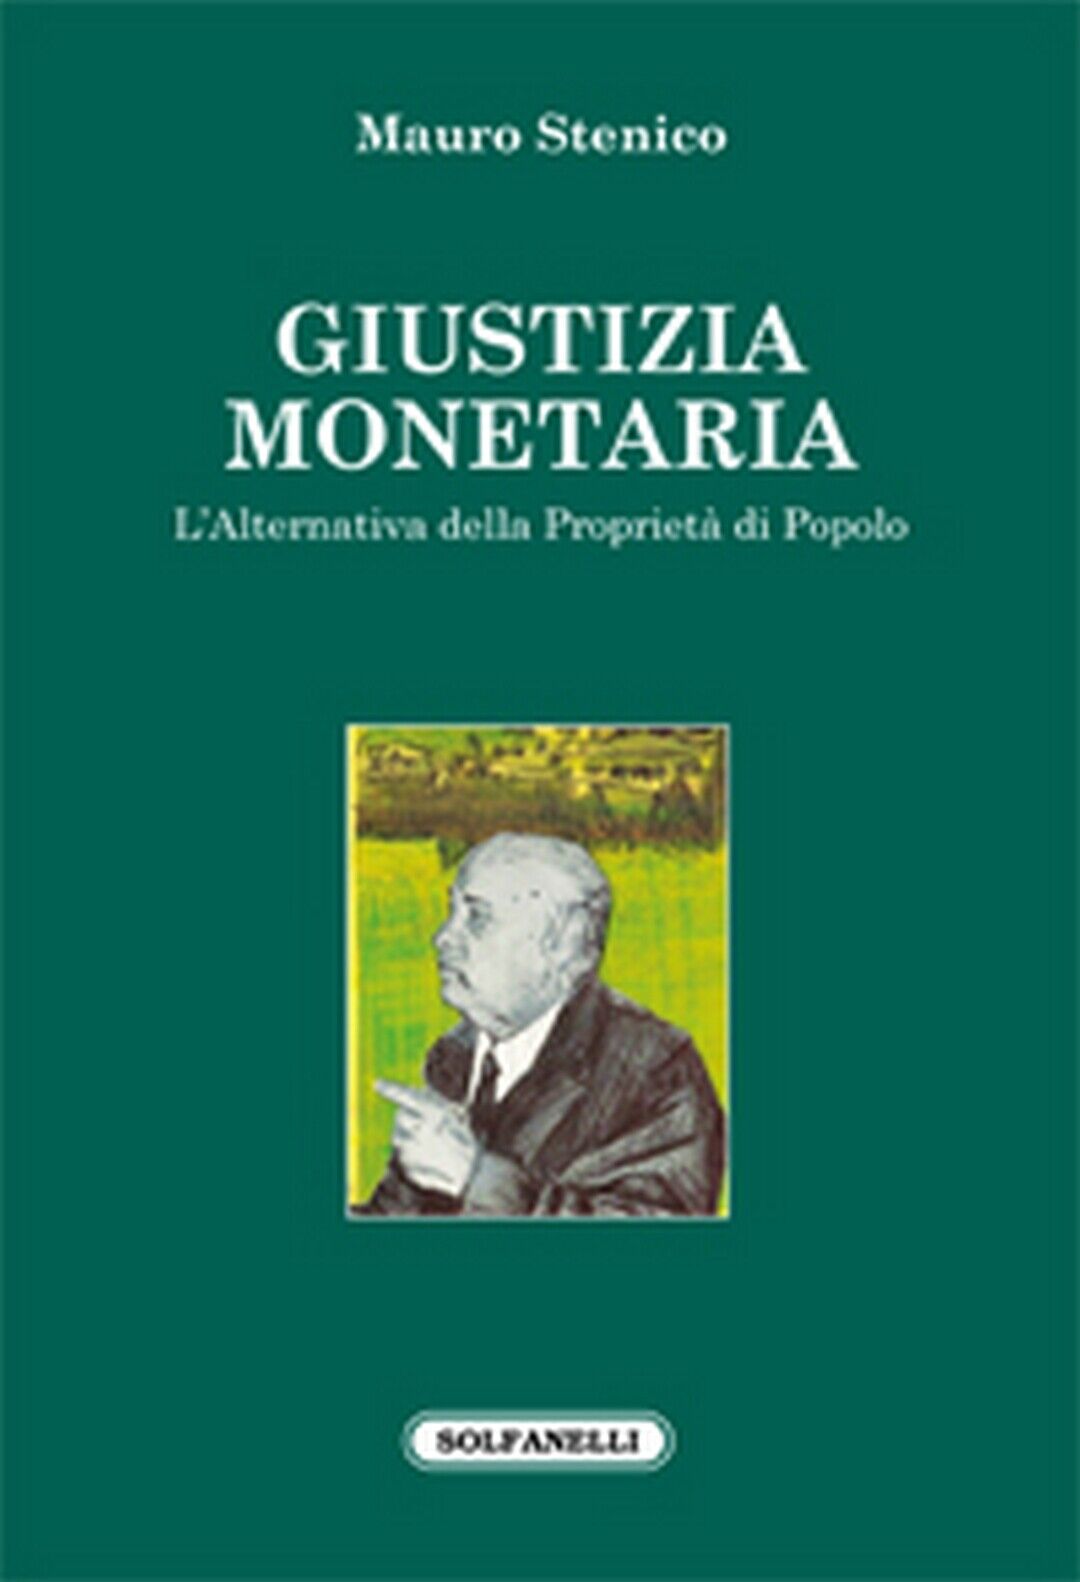 GIUSTIZIA MONETARIA  di Mauro Stenico,  Solfanelli Edizioni